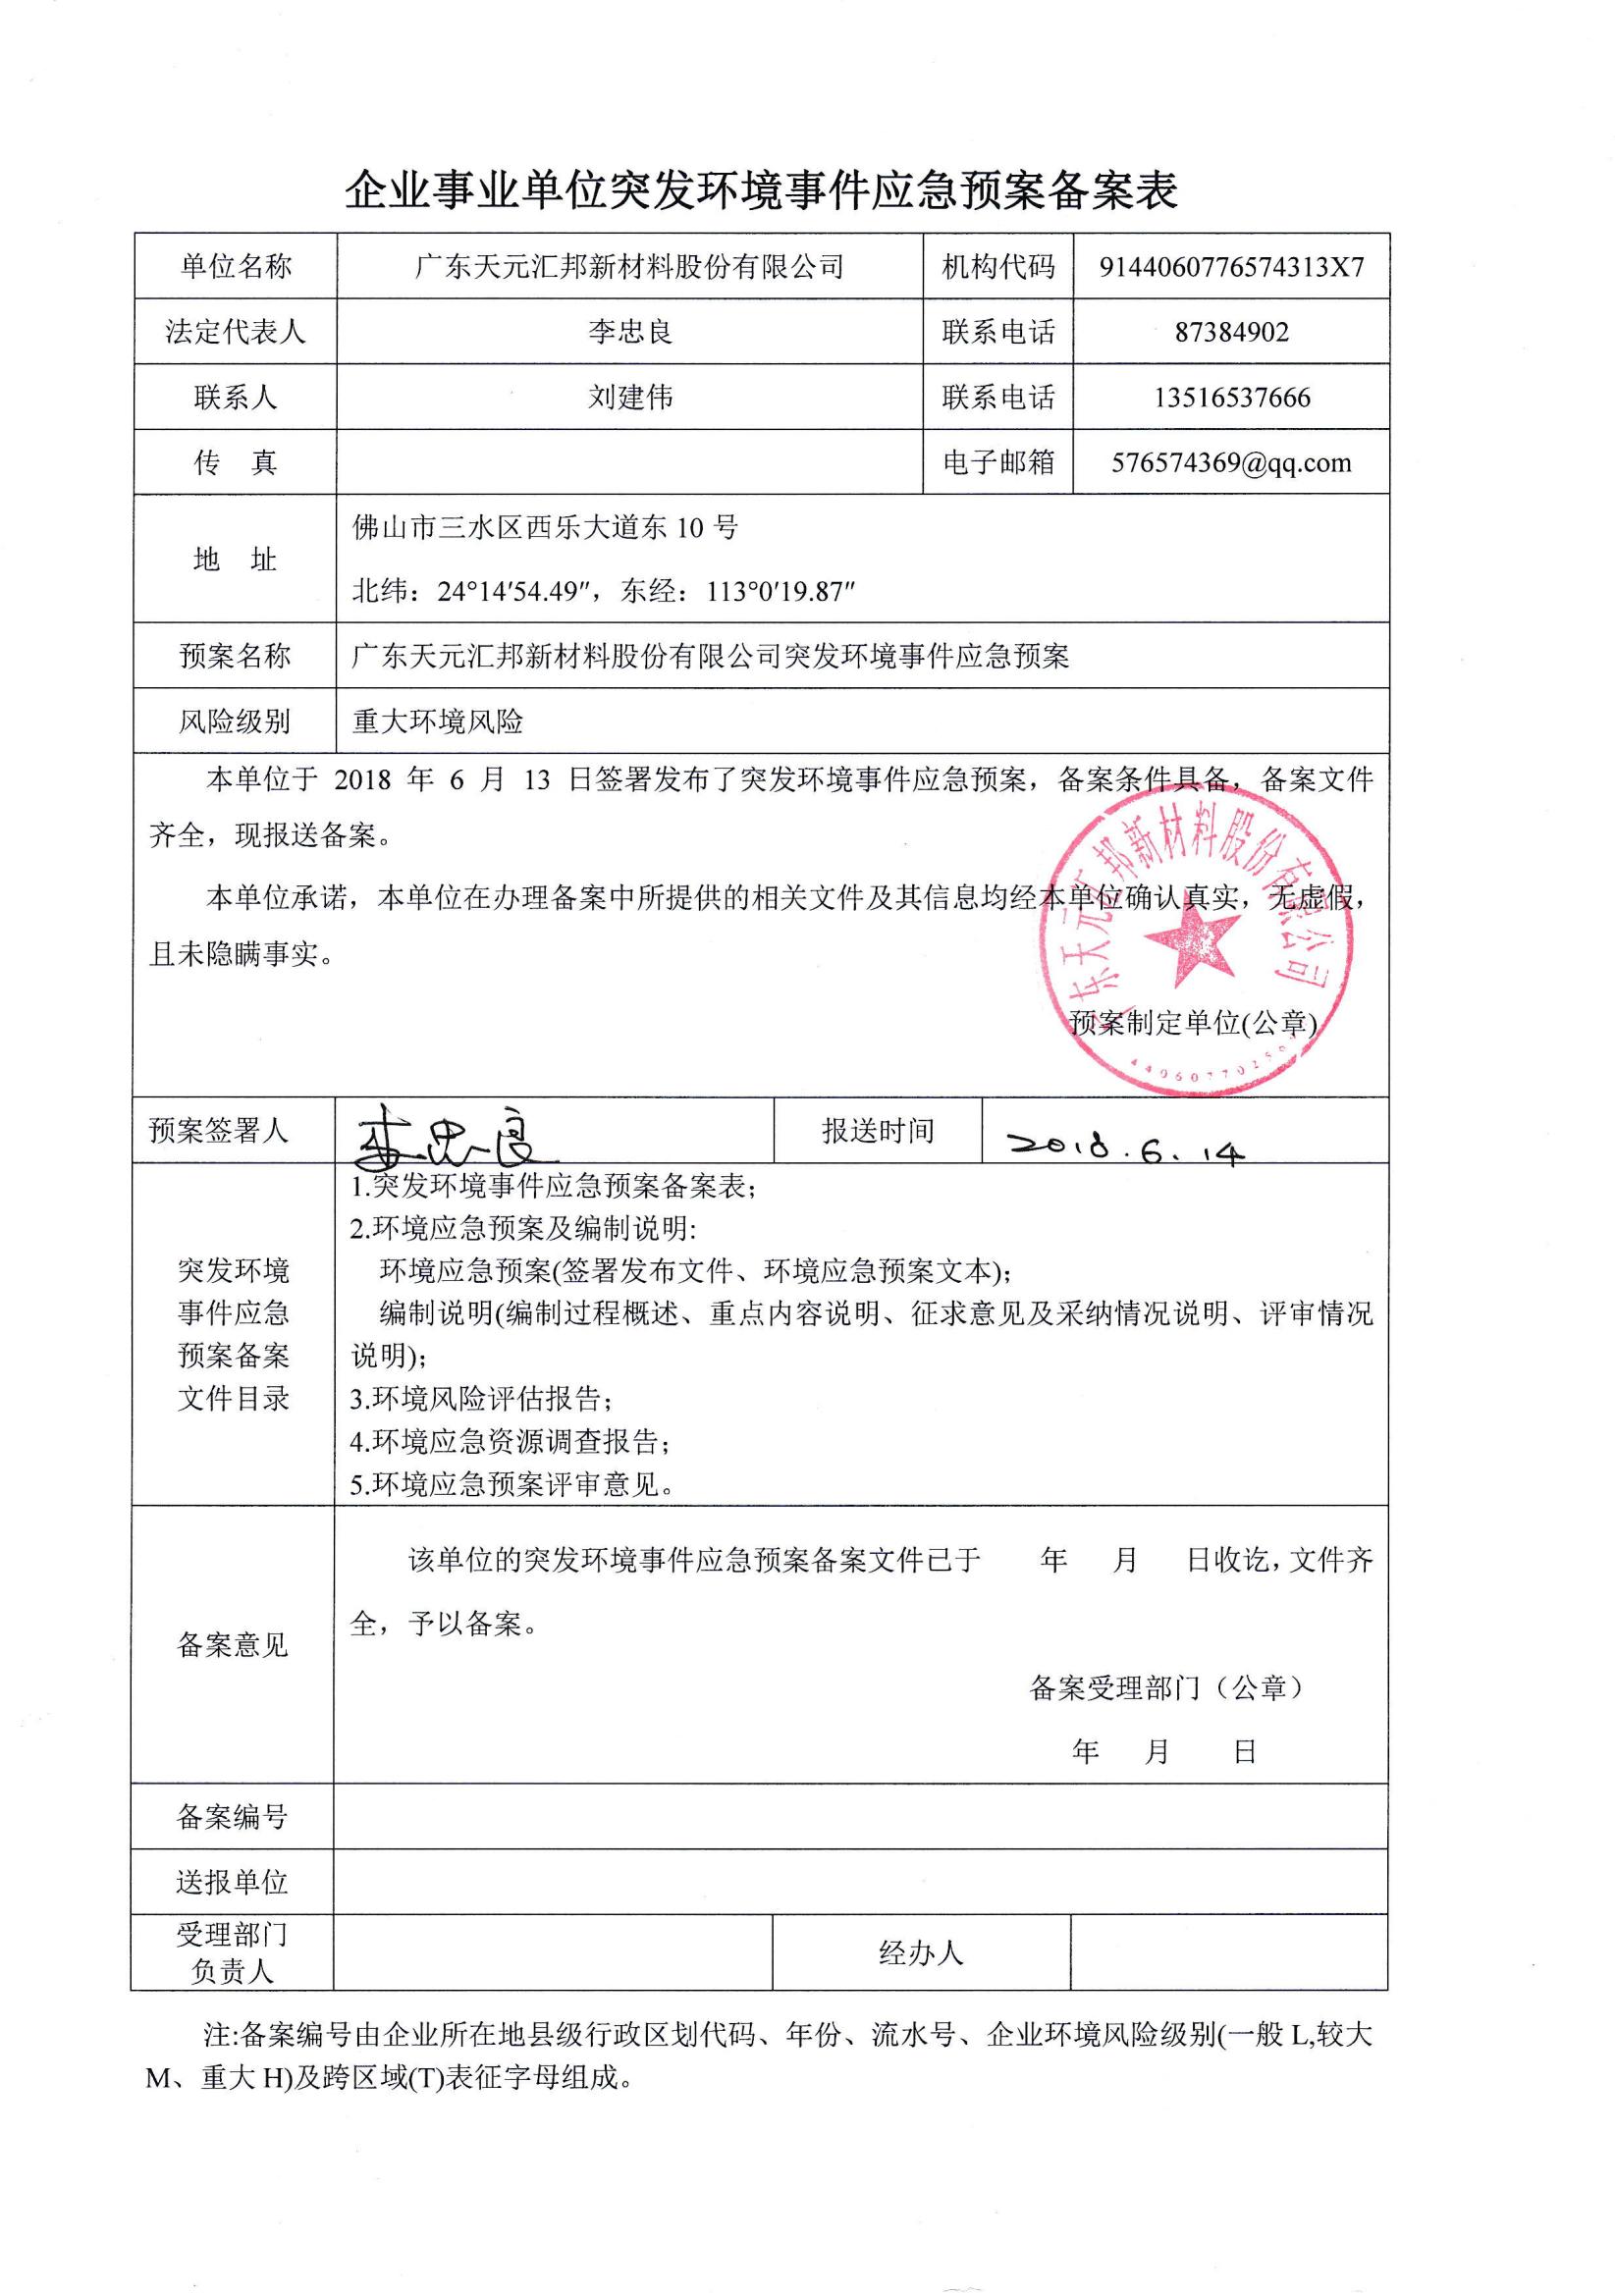 广东天元汇邦新材料股份有限公司应急预案备案表